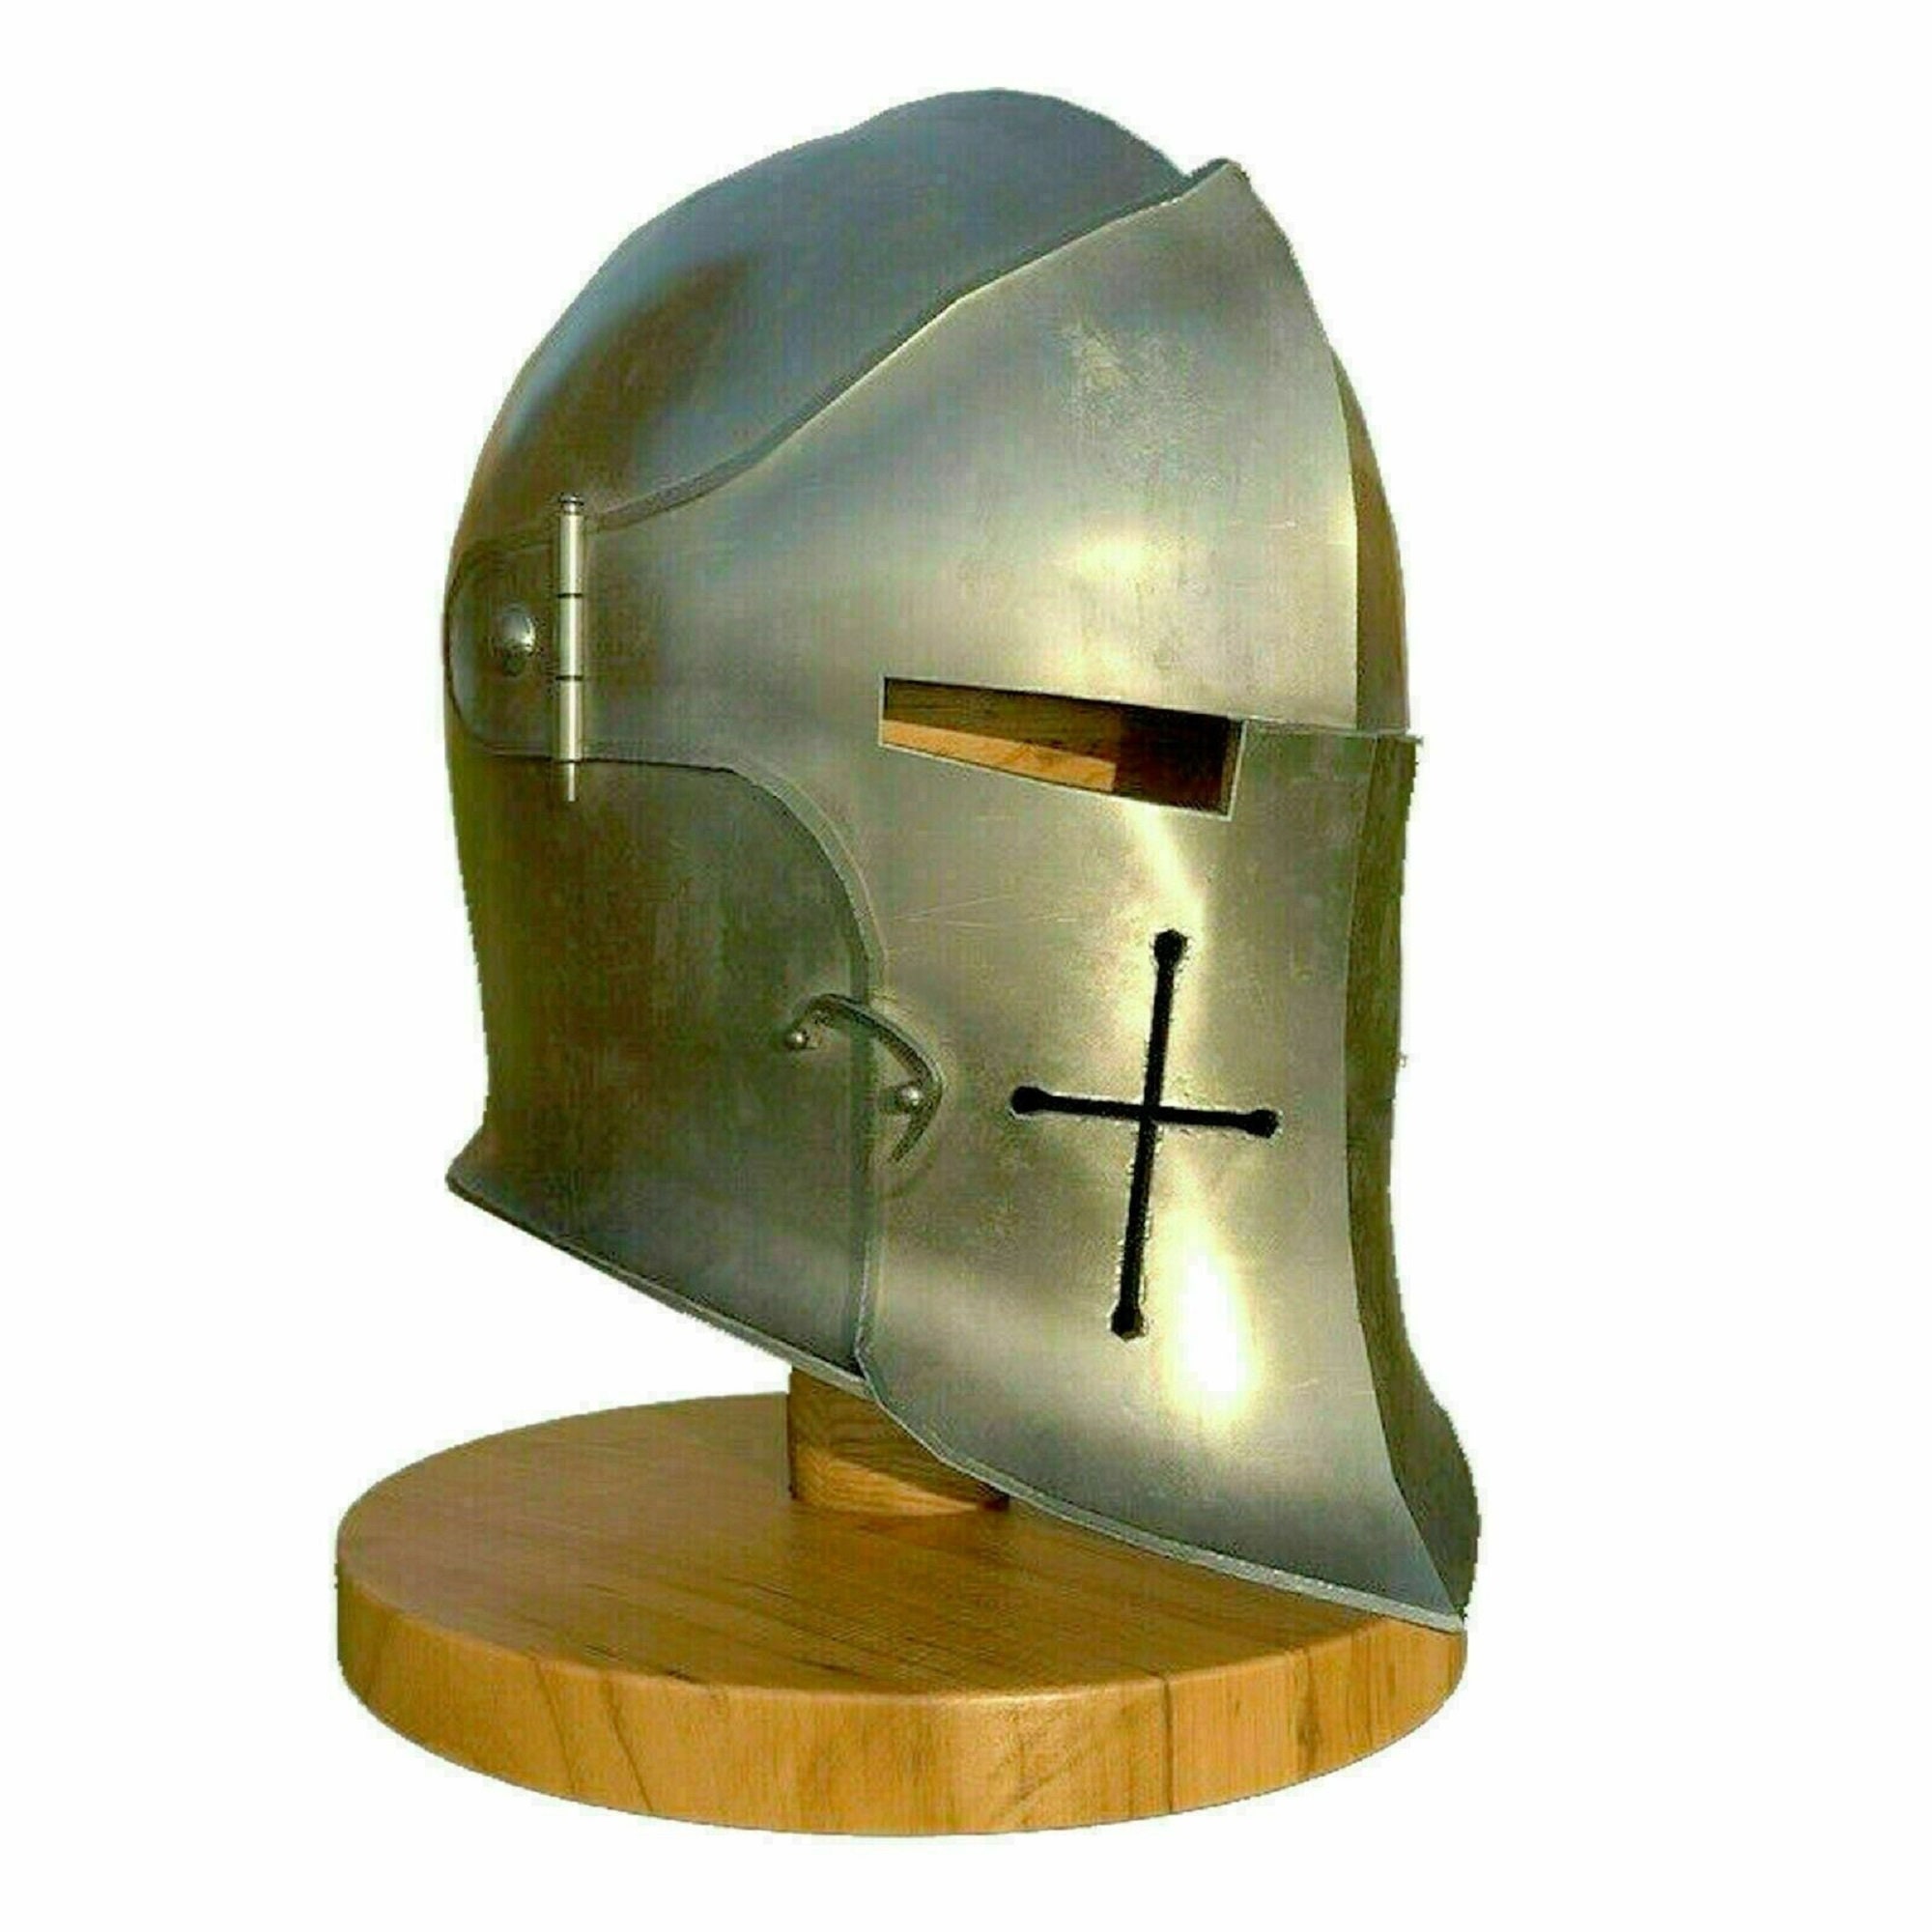 New Super Medieval Knight Armor Crusader Templar Helmet with Brass 